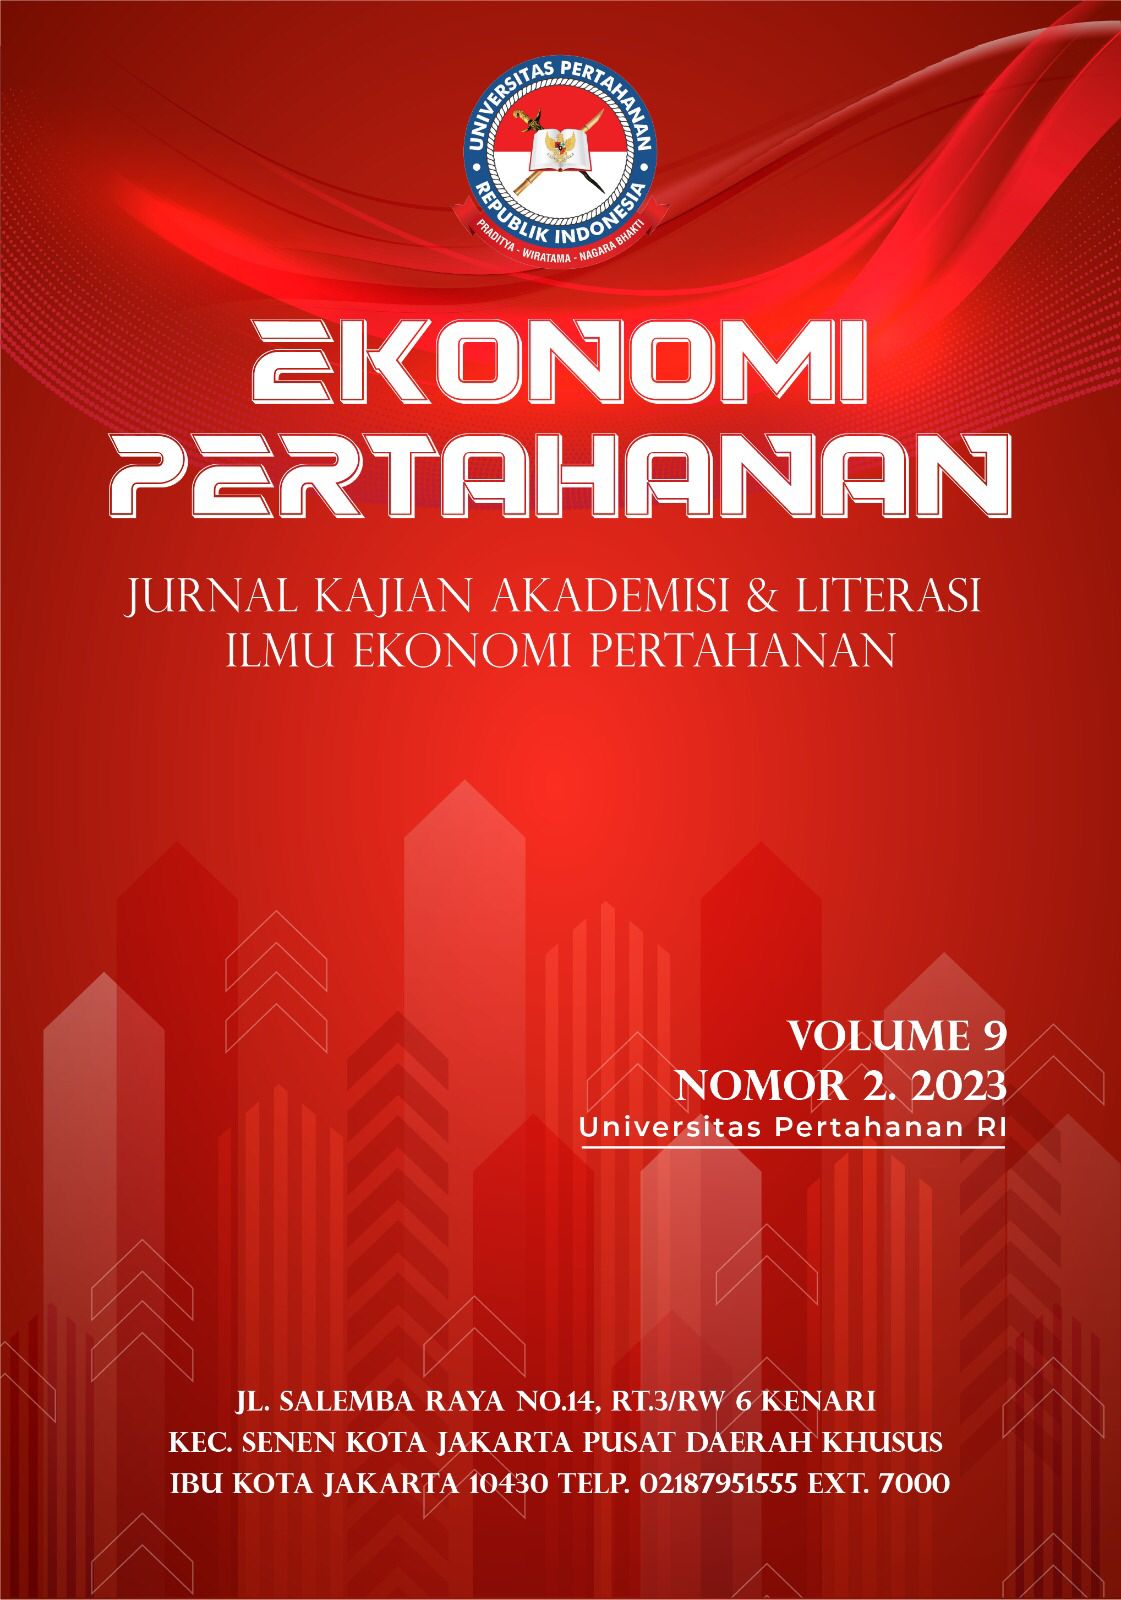 					Lihat Vol 9 No 2 (2023): Ekonomi Pertahanan : Jurnal Kajian Akademisi dan Literasi Ilmu Ekonomi Pertahanan 
				